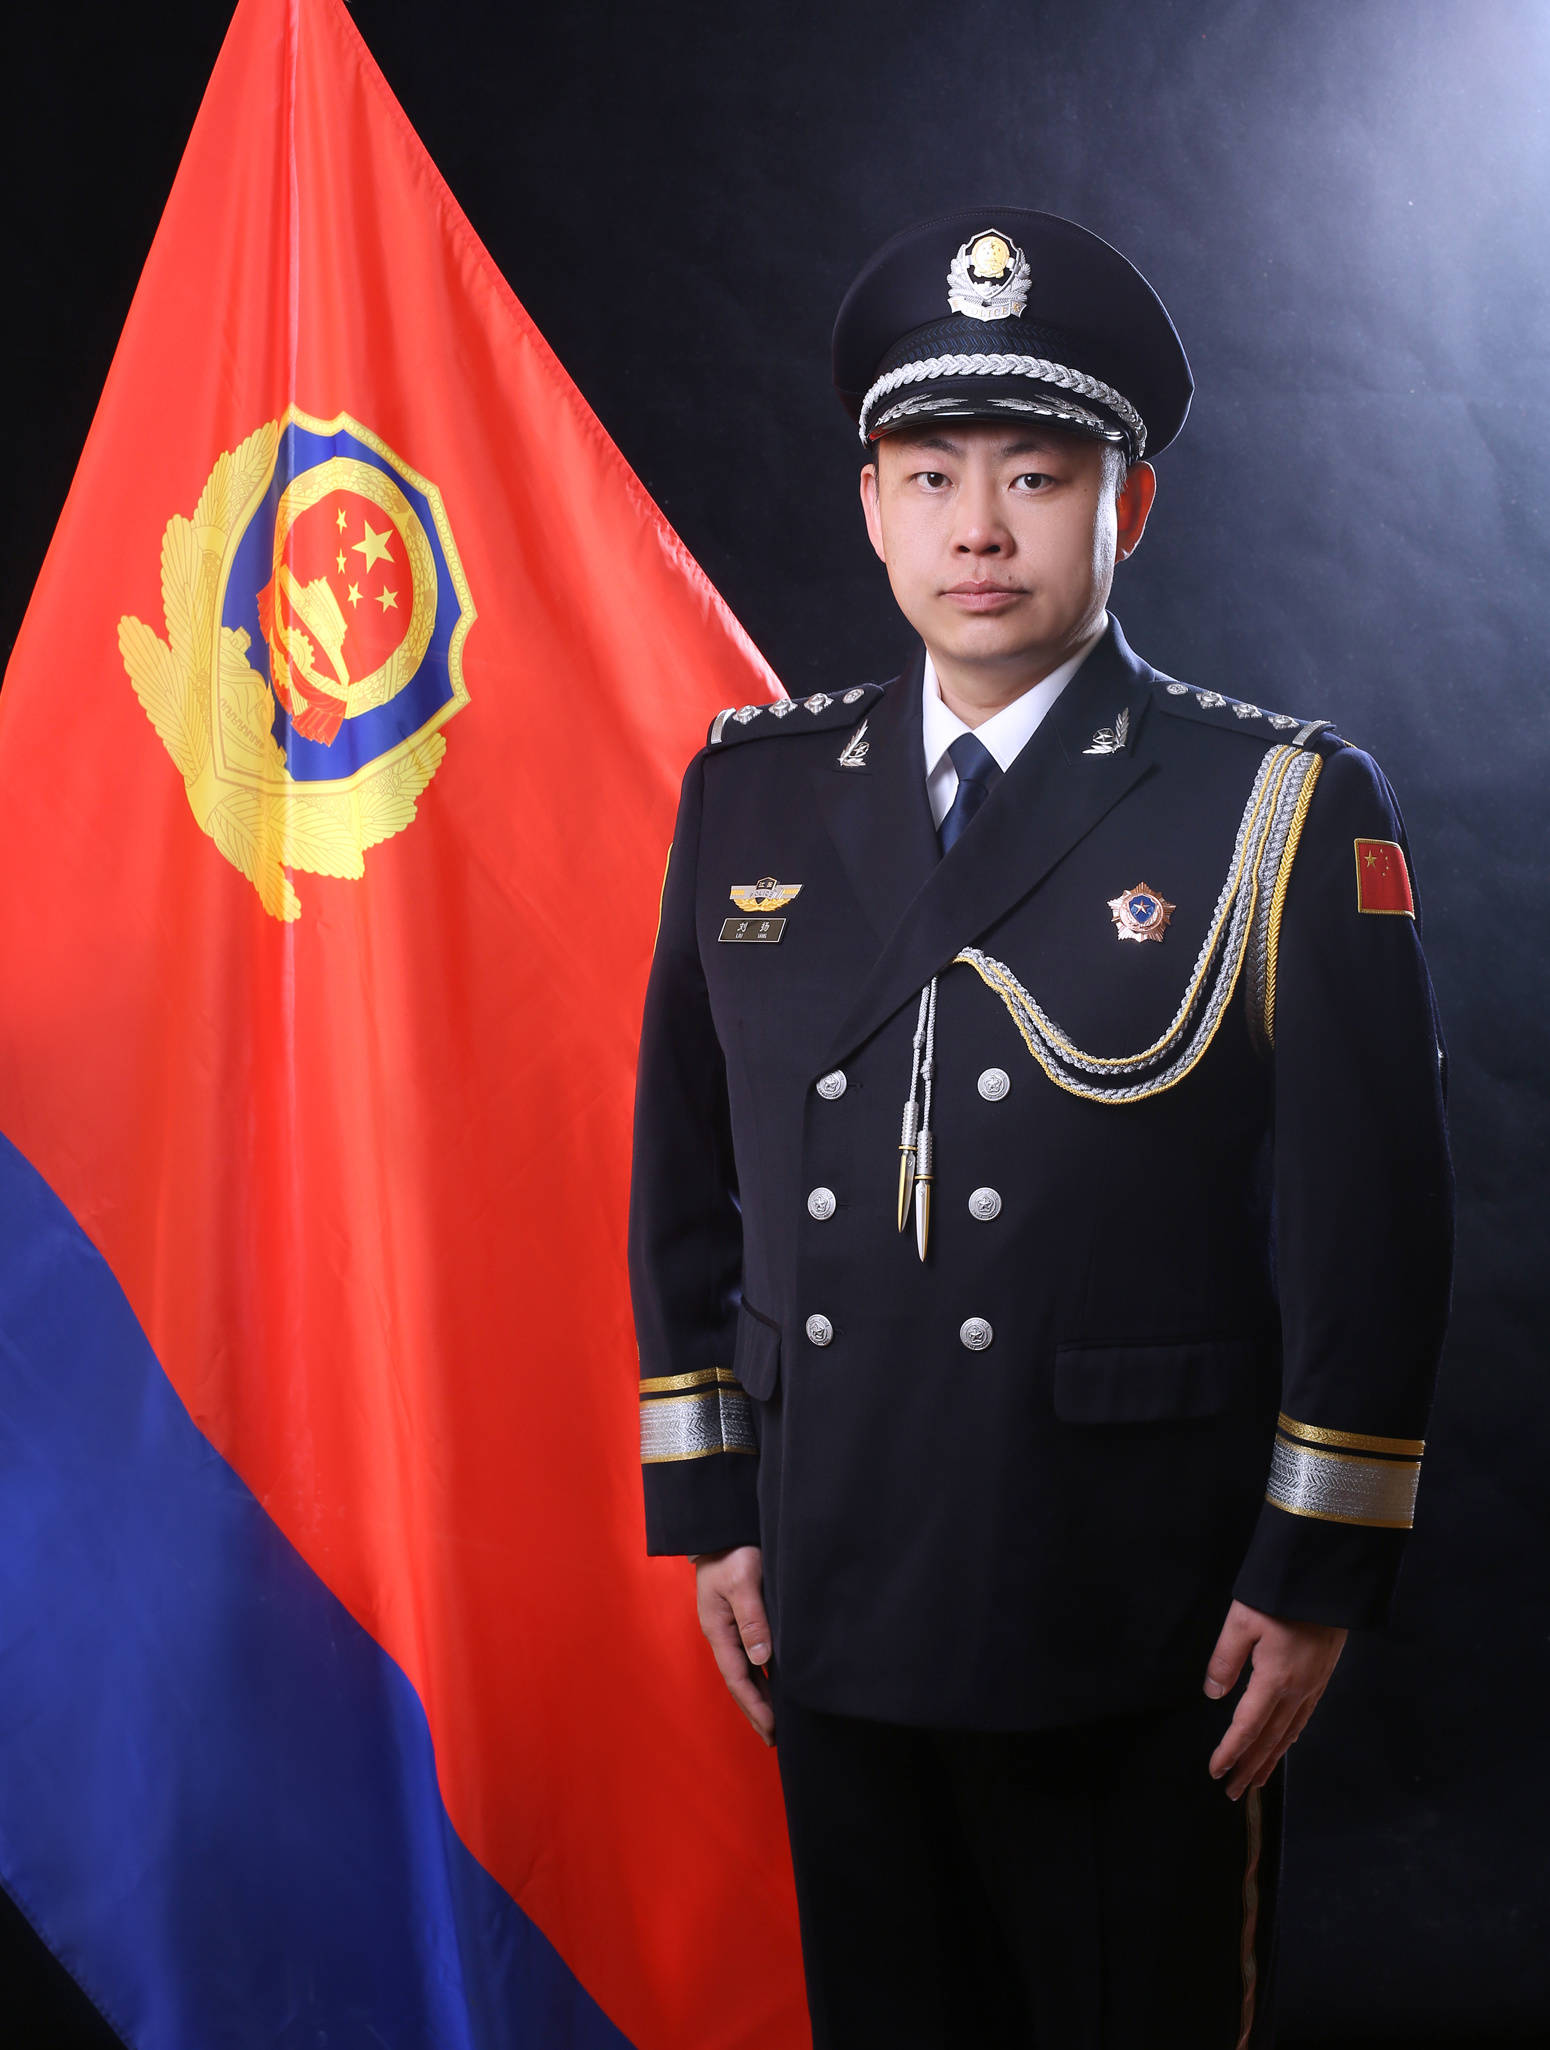 佤邦警察图片